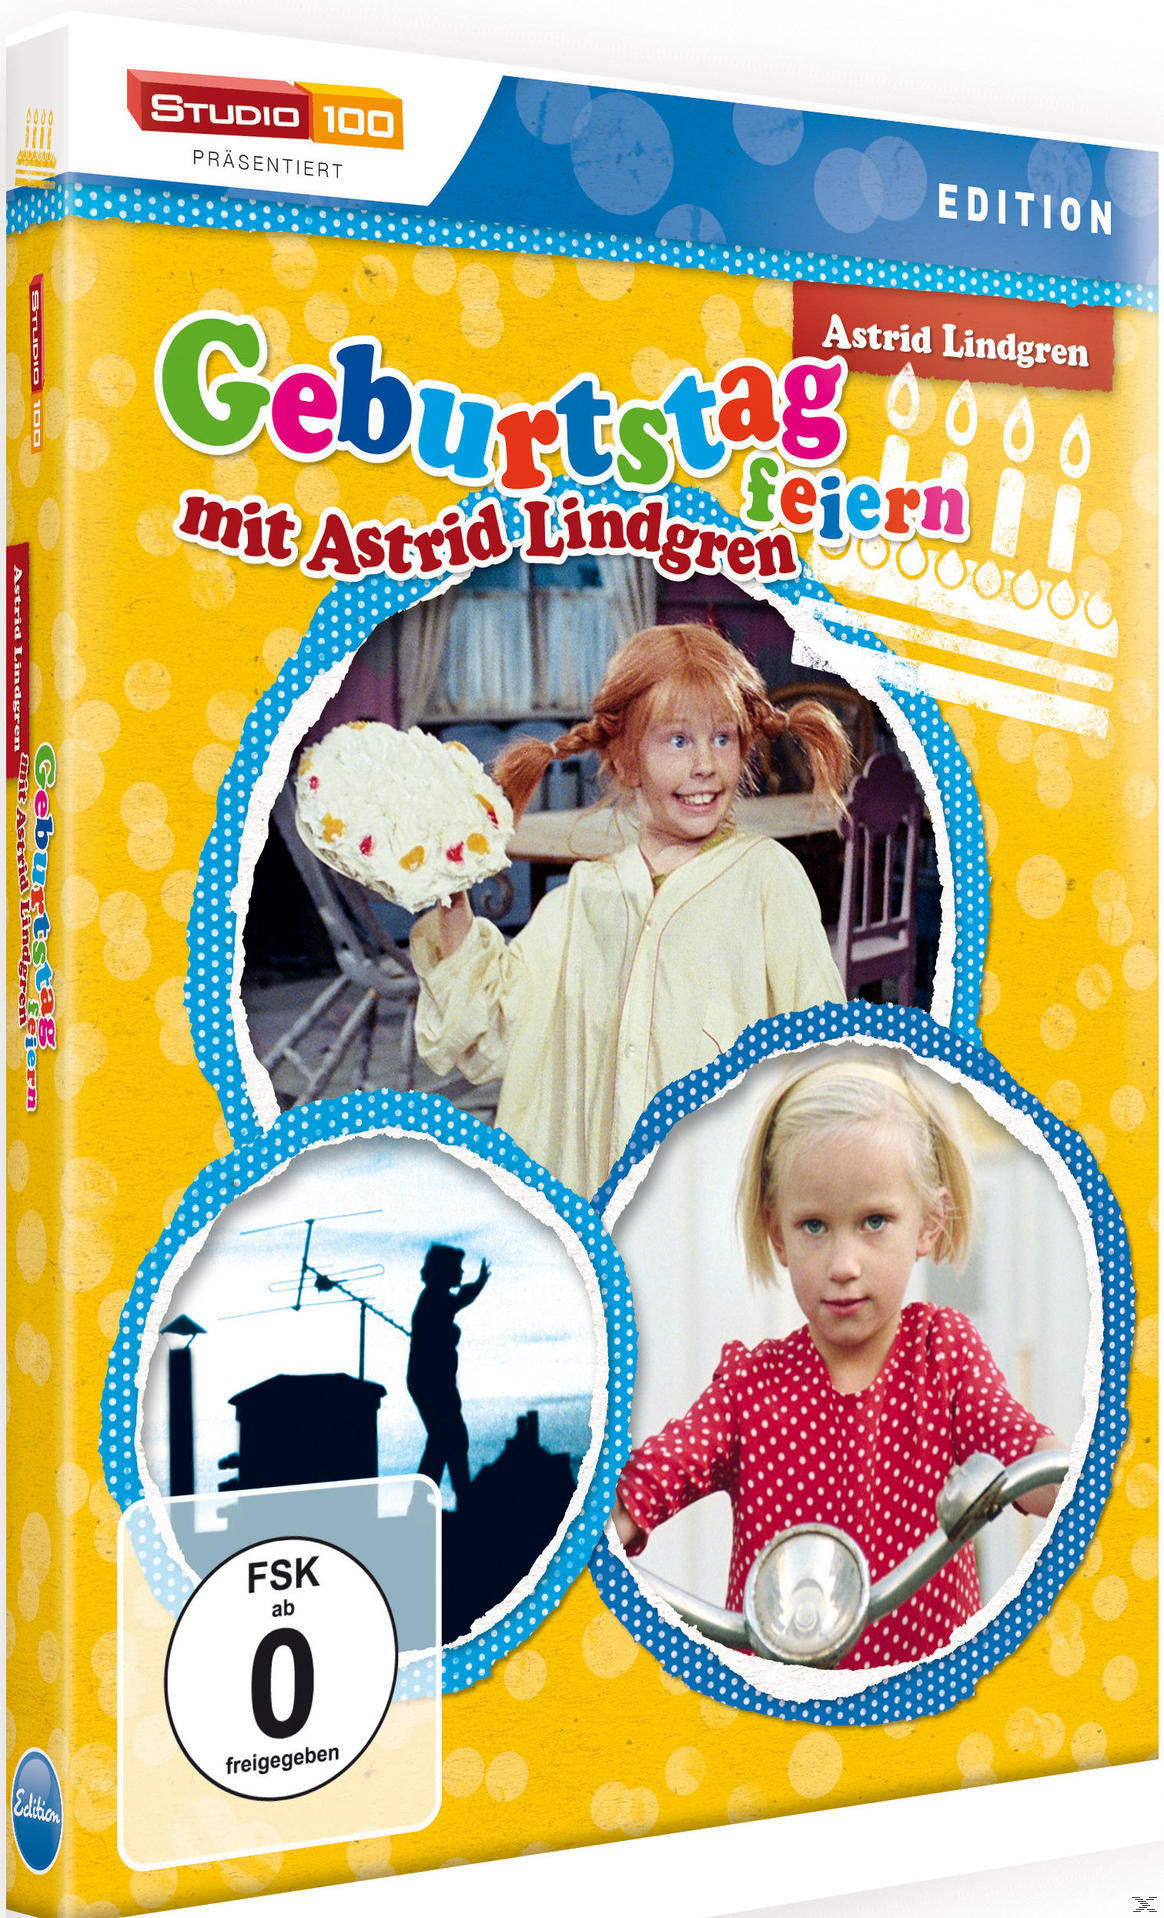 Geburtstag feiern DVD Lindgren mit Astrid